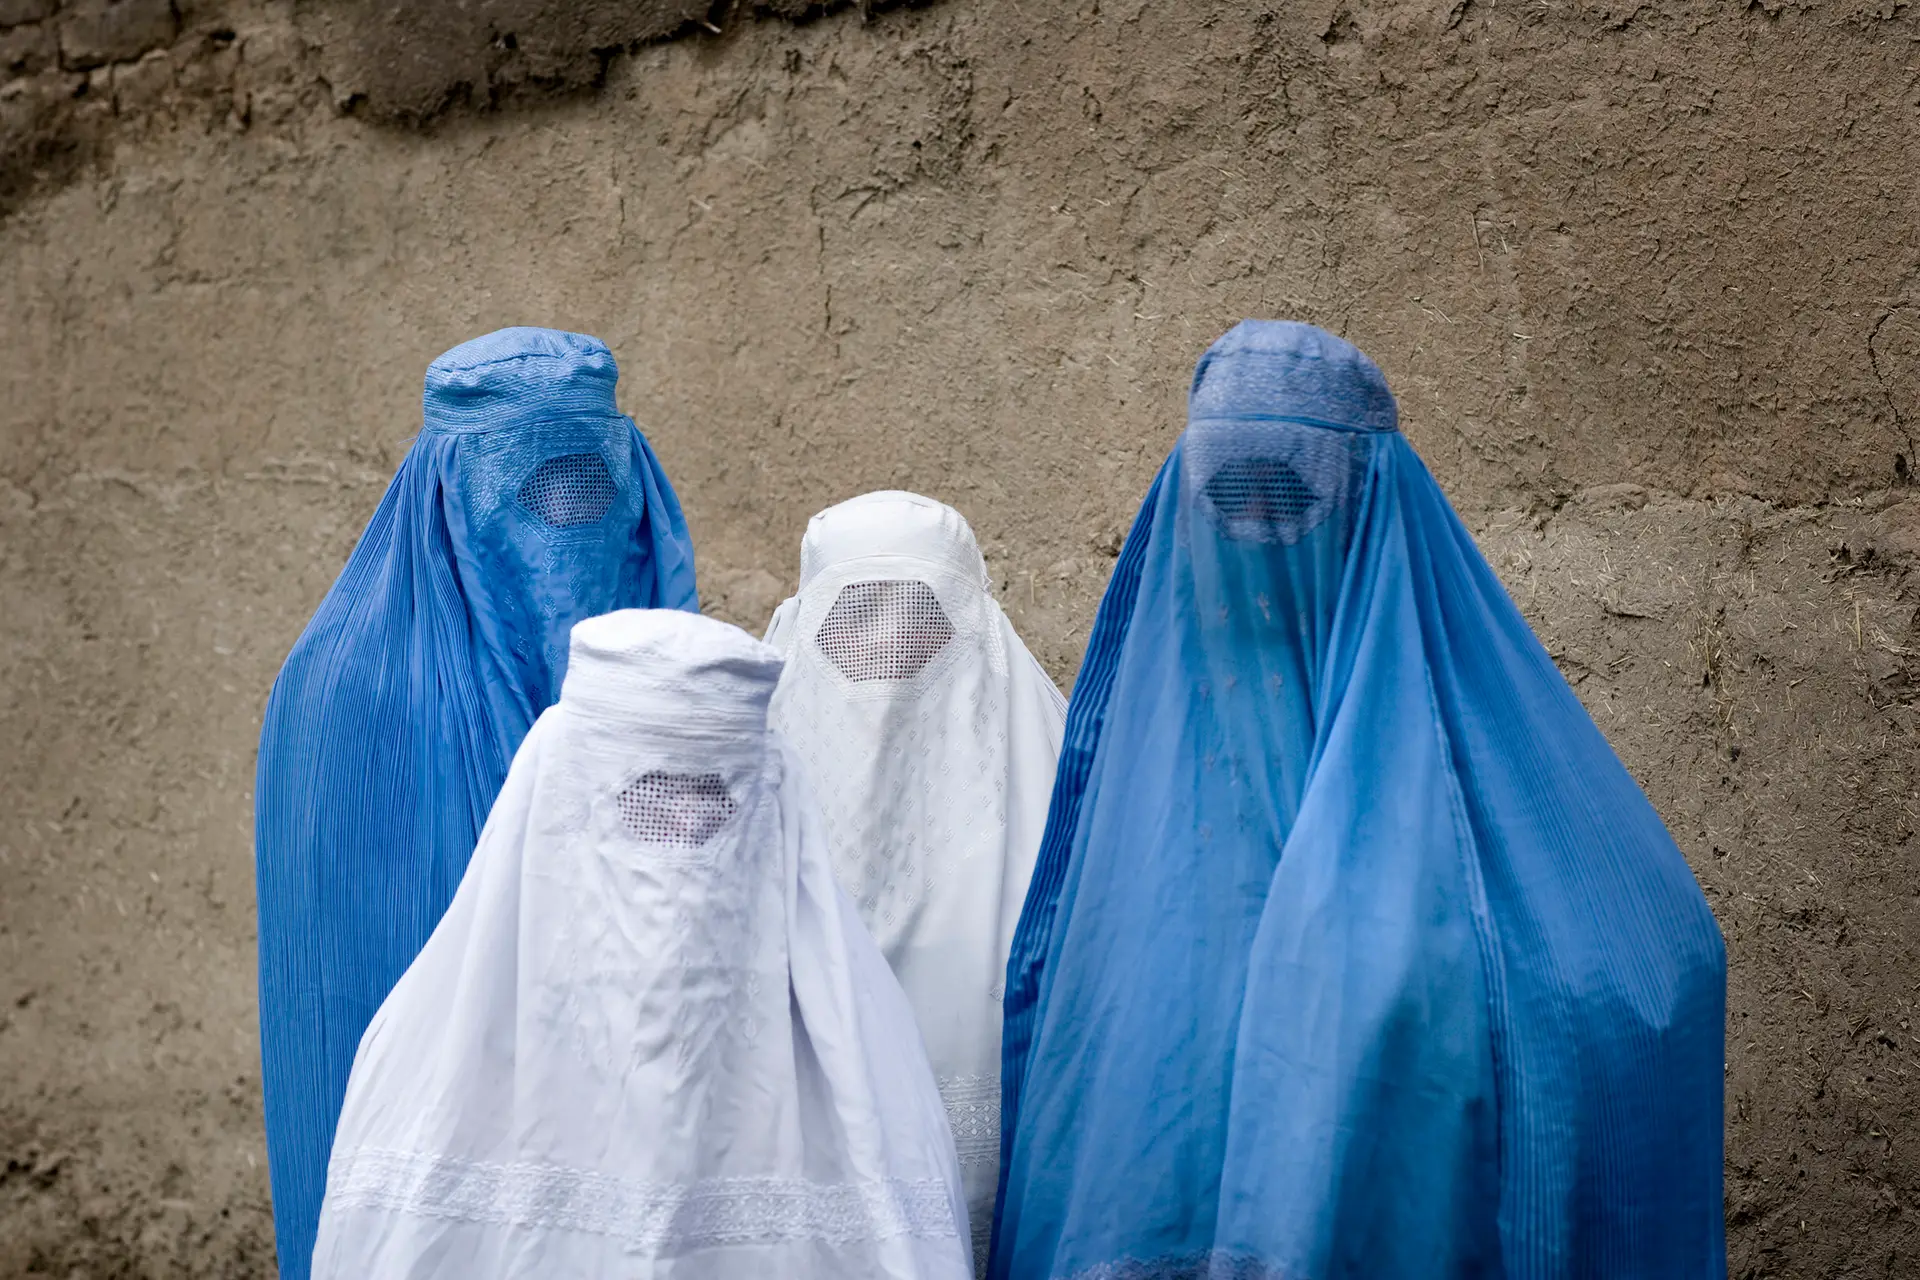 Mulheres usam burca no Afeganistão